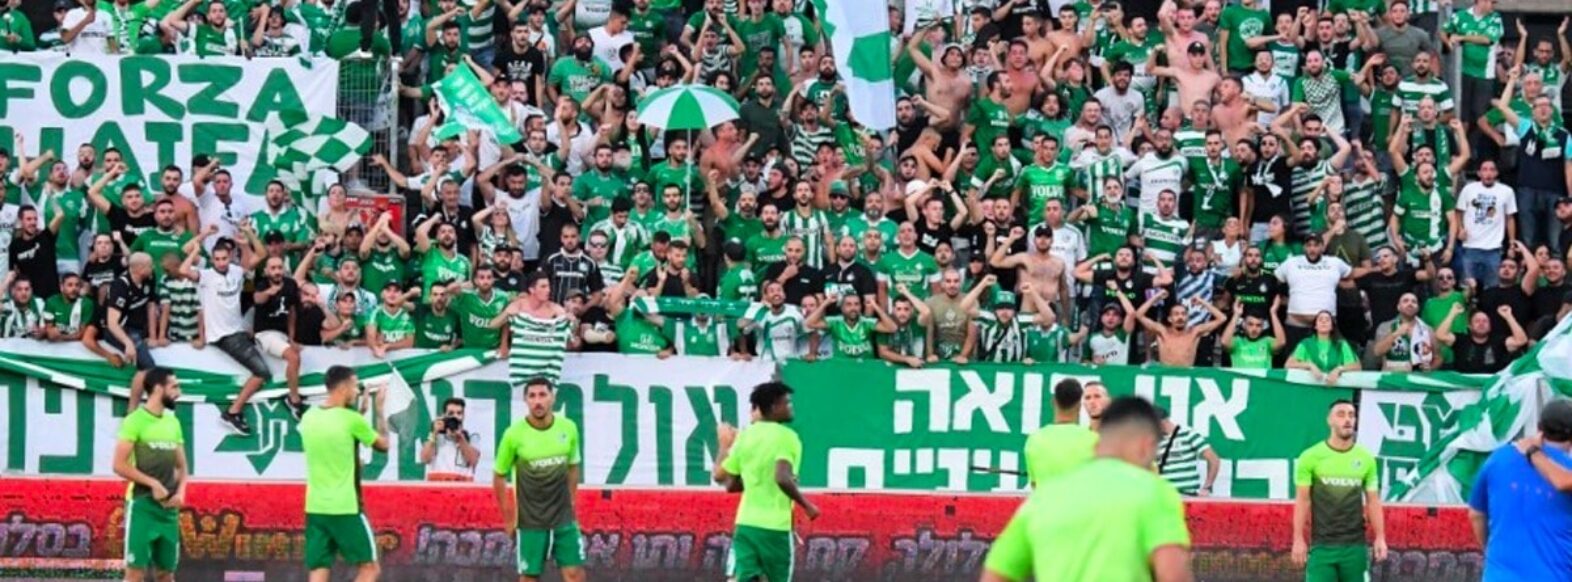 הנחיות של המשטרה למשחק הערב באיצטדיון סמי עופר שעשוי להכתיר את מכבי חיפה לאלופת המדינה